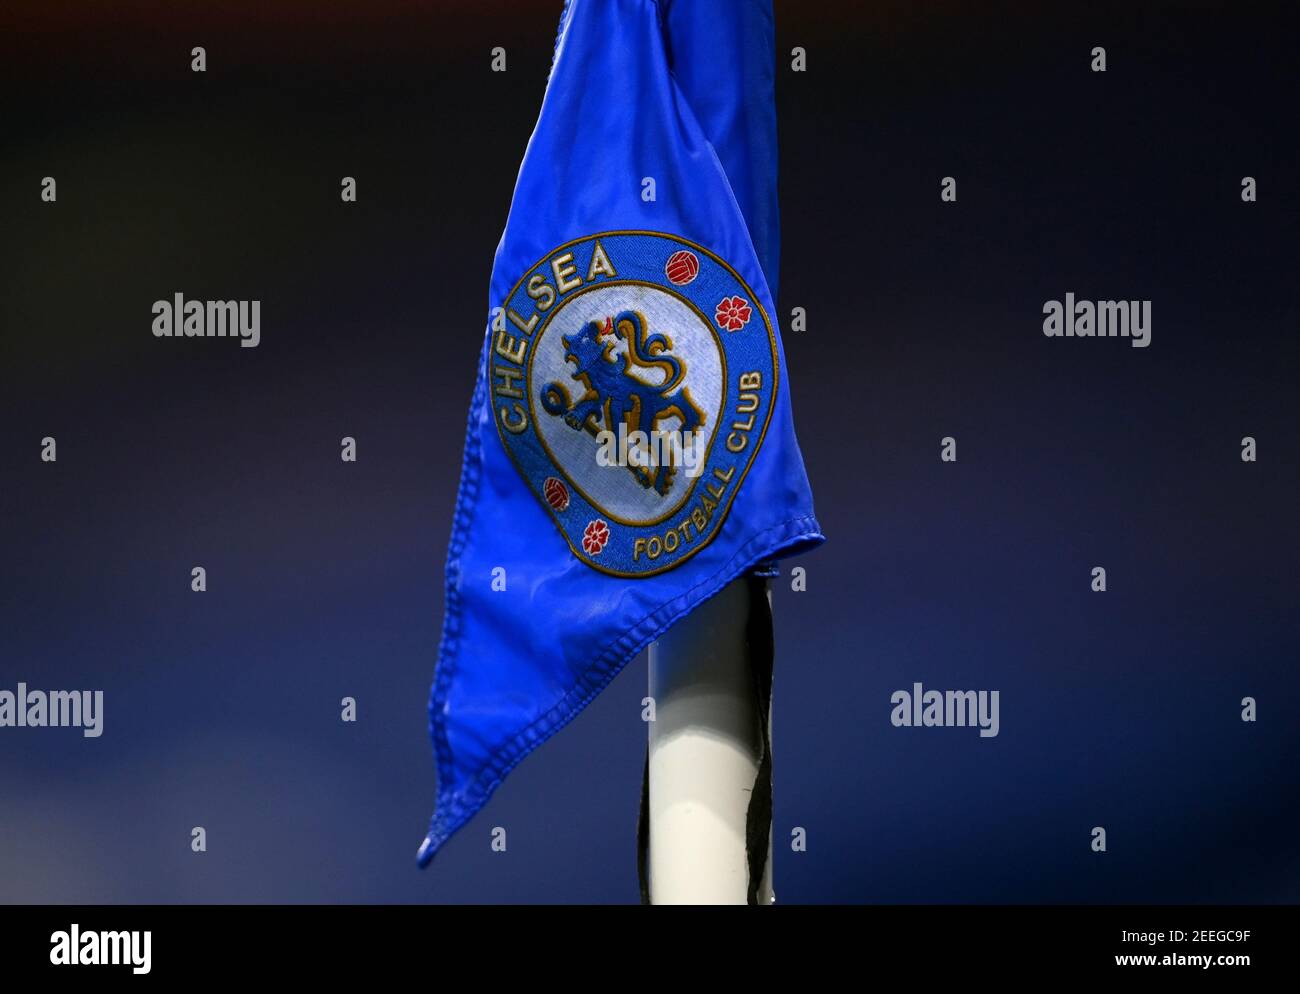 Eine Chelsea-Eckflagge während des Premier League-Spiels in Stamford Bridge, London. Bilddatum: Montag, 15. Februar 2021. Stockfoto